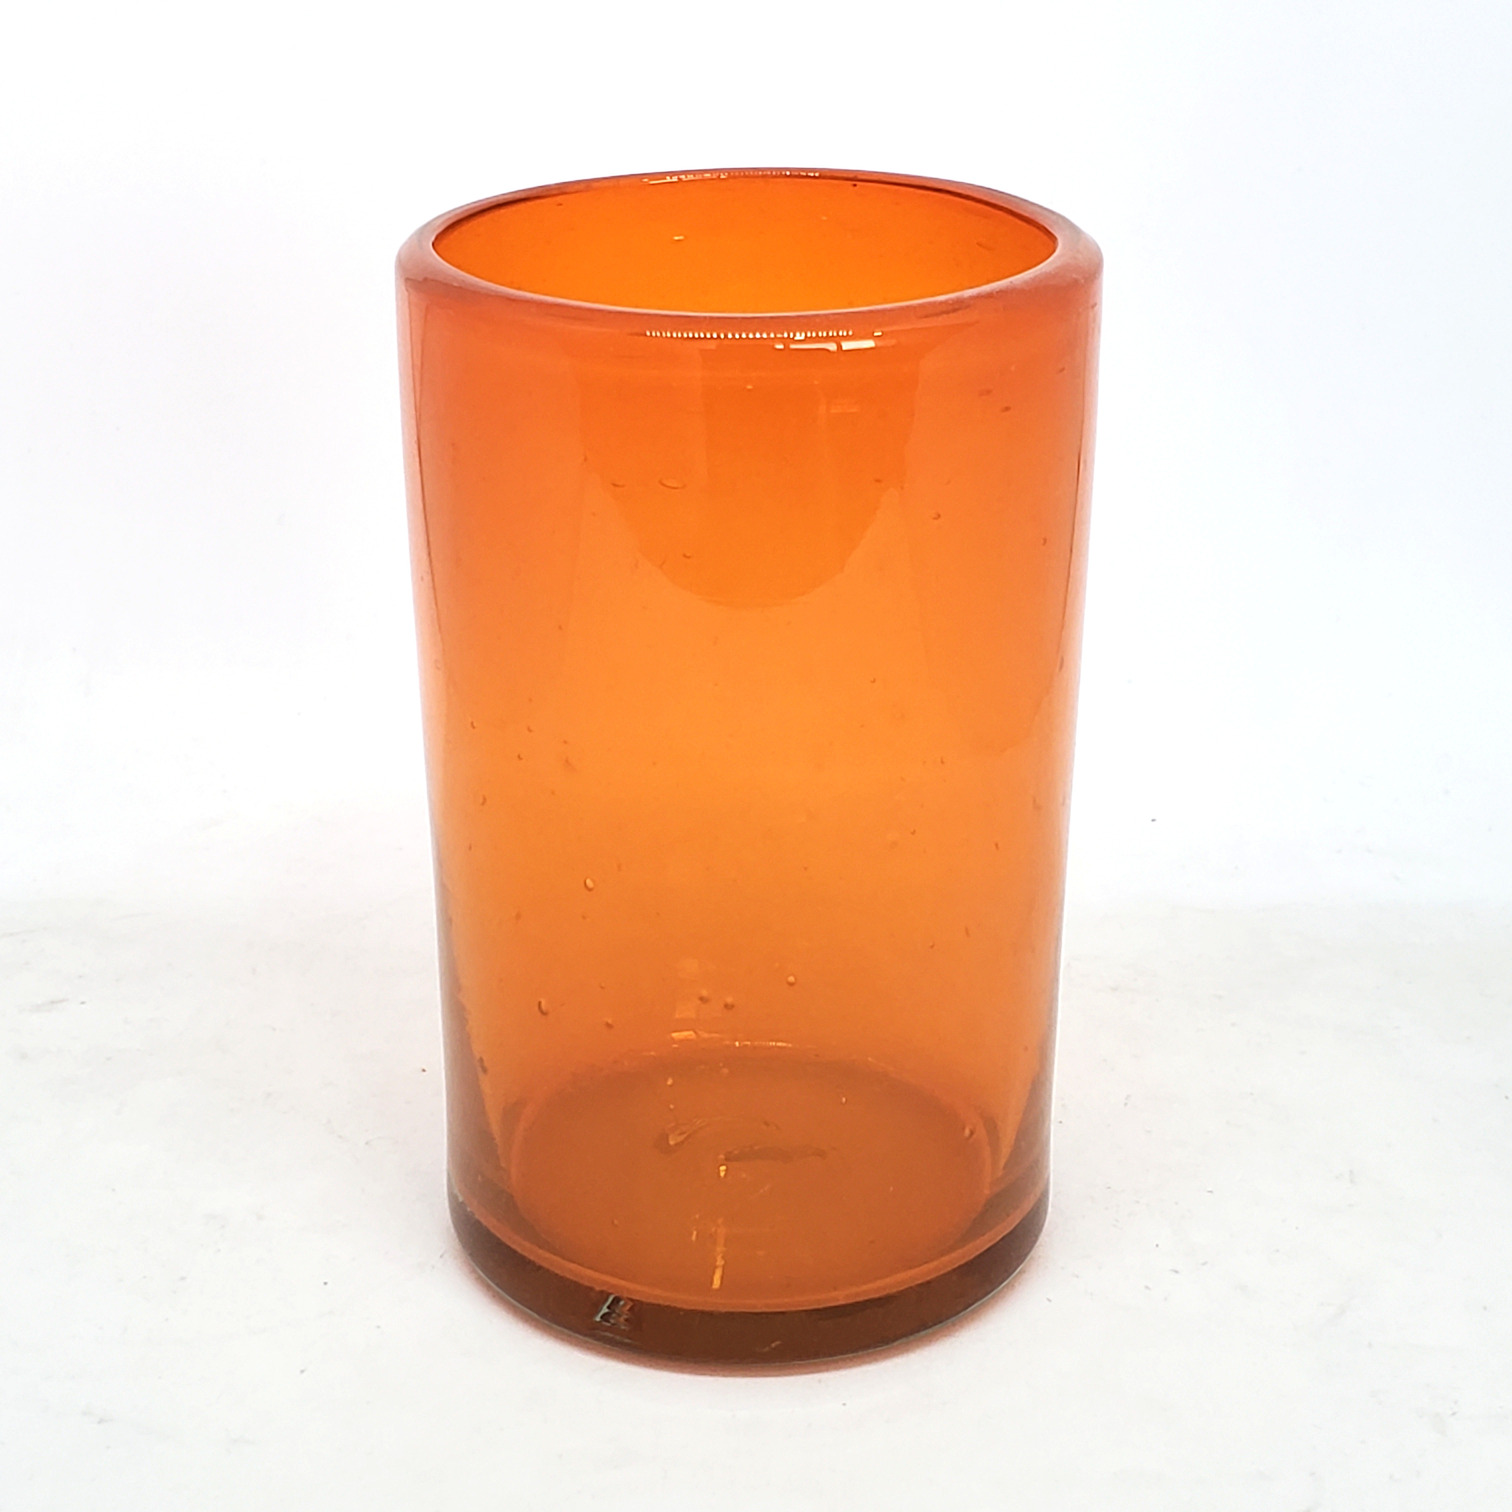 VIDRIO SOPLADO al Mayoreo / vasos grandes color naranja / Éstos artesanales vasos le darán un toque clásico a su bebida favorita.